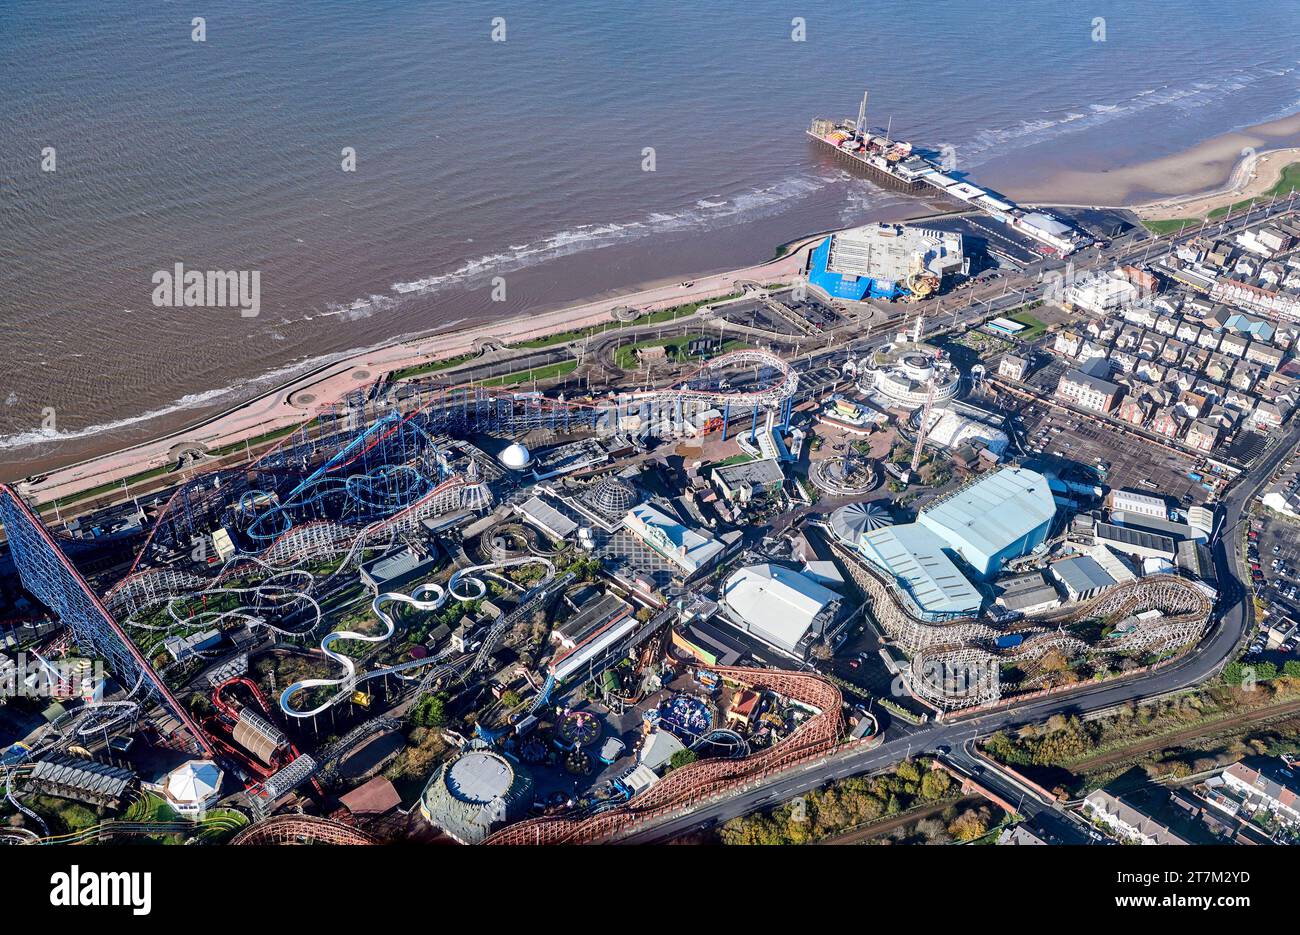 Una foto aerea del fronte mare e della spiaggia nella località turistica di Blackpool, Inghilterra nord-occidentale, Regno Unito e la fiera e giostre Pleasure Beach Foto Stock